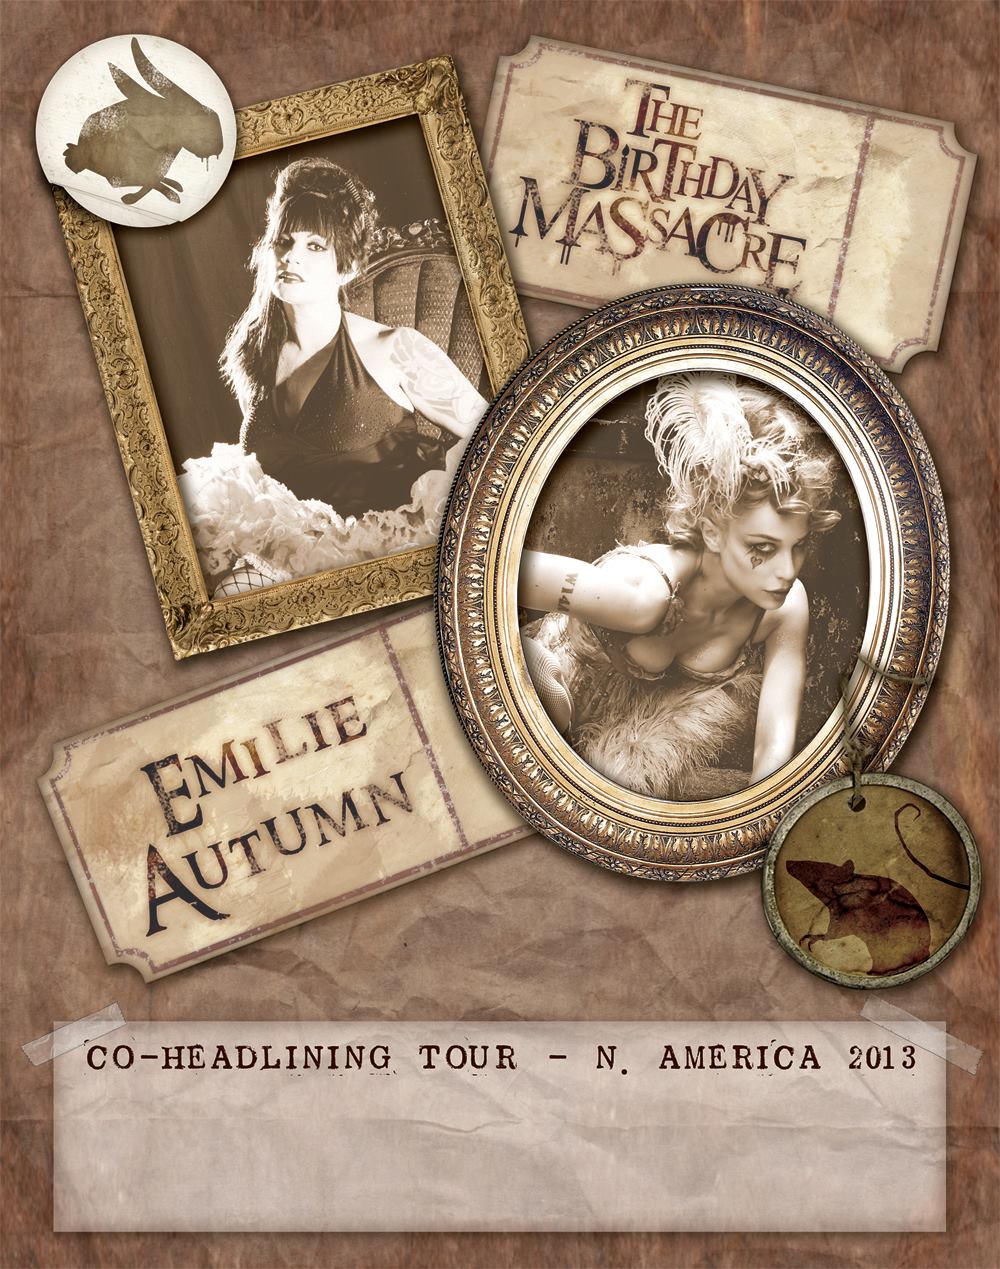 Постер к совместному турне с  Emilie Autumn по Северной Америке.